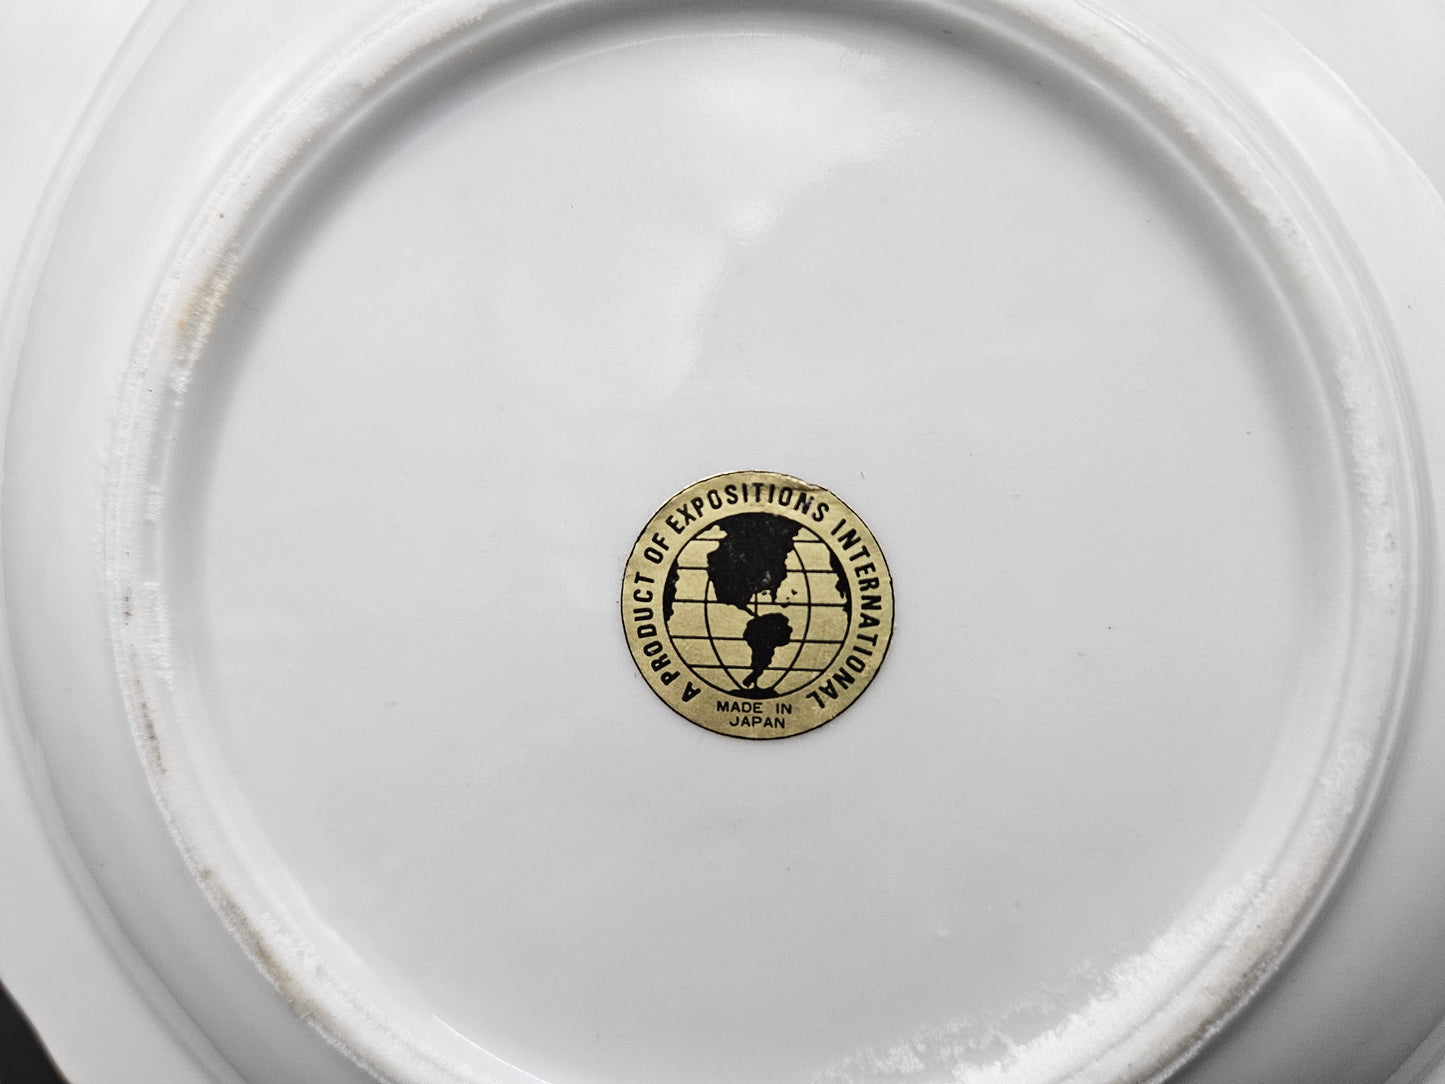 EXPO '74 original souvenir ashtray